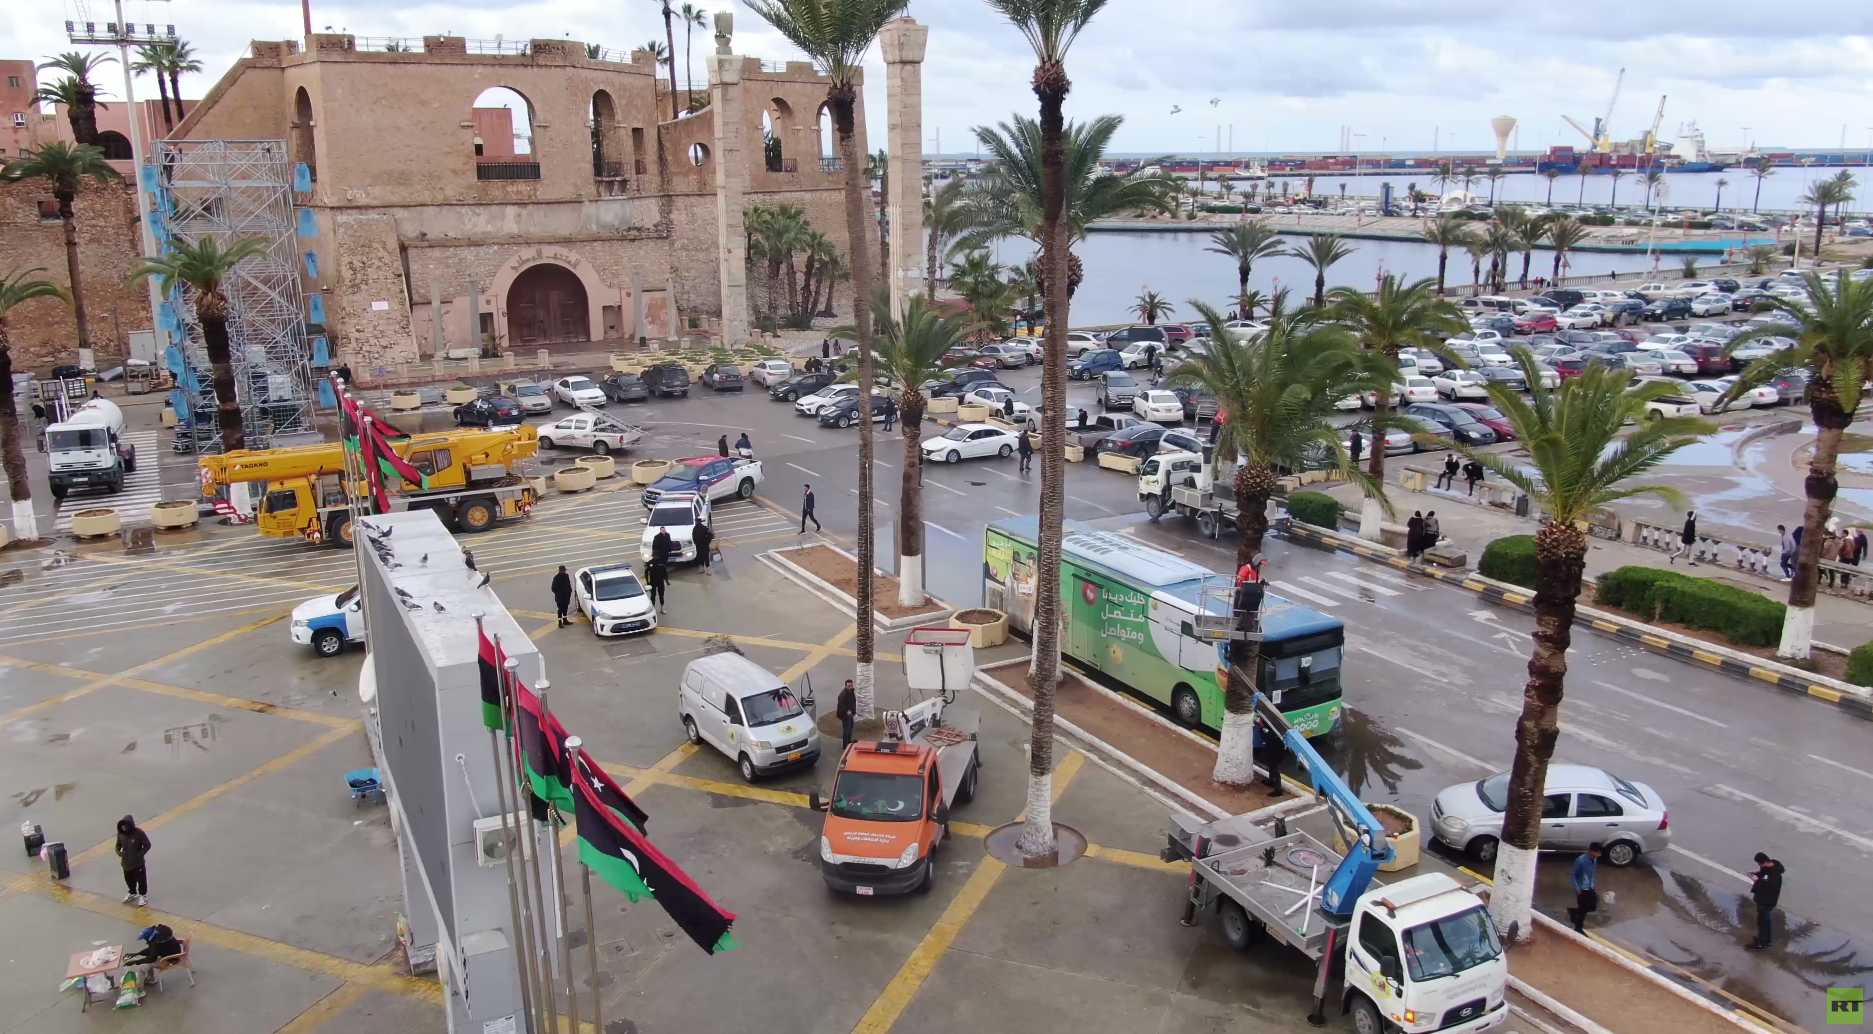 الليبيون يستقبلون الذكرى 13 لثورة 17 فبراير بالوقوف على فشل العملية السياسية (فيديو)